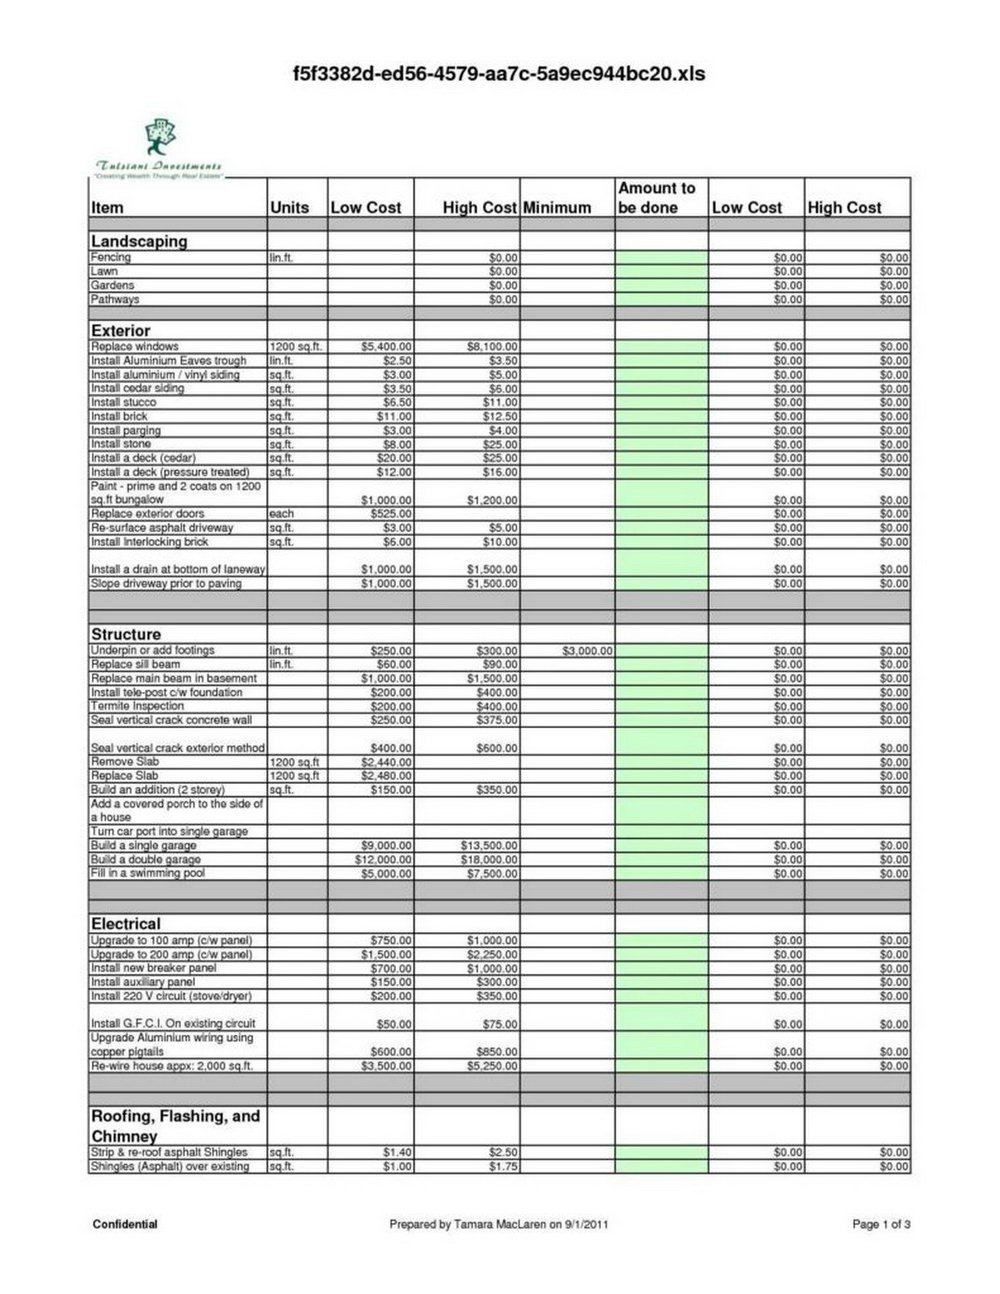 Tax Itemization Worksheet Excel